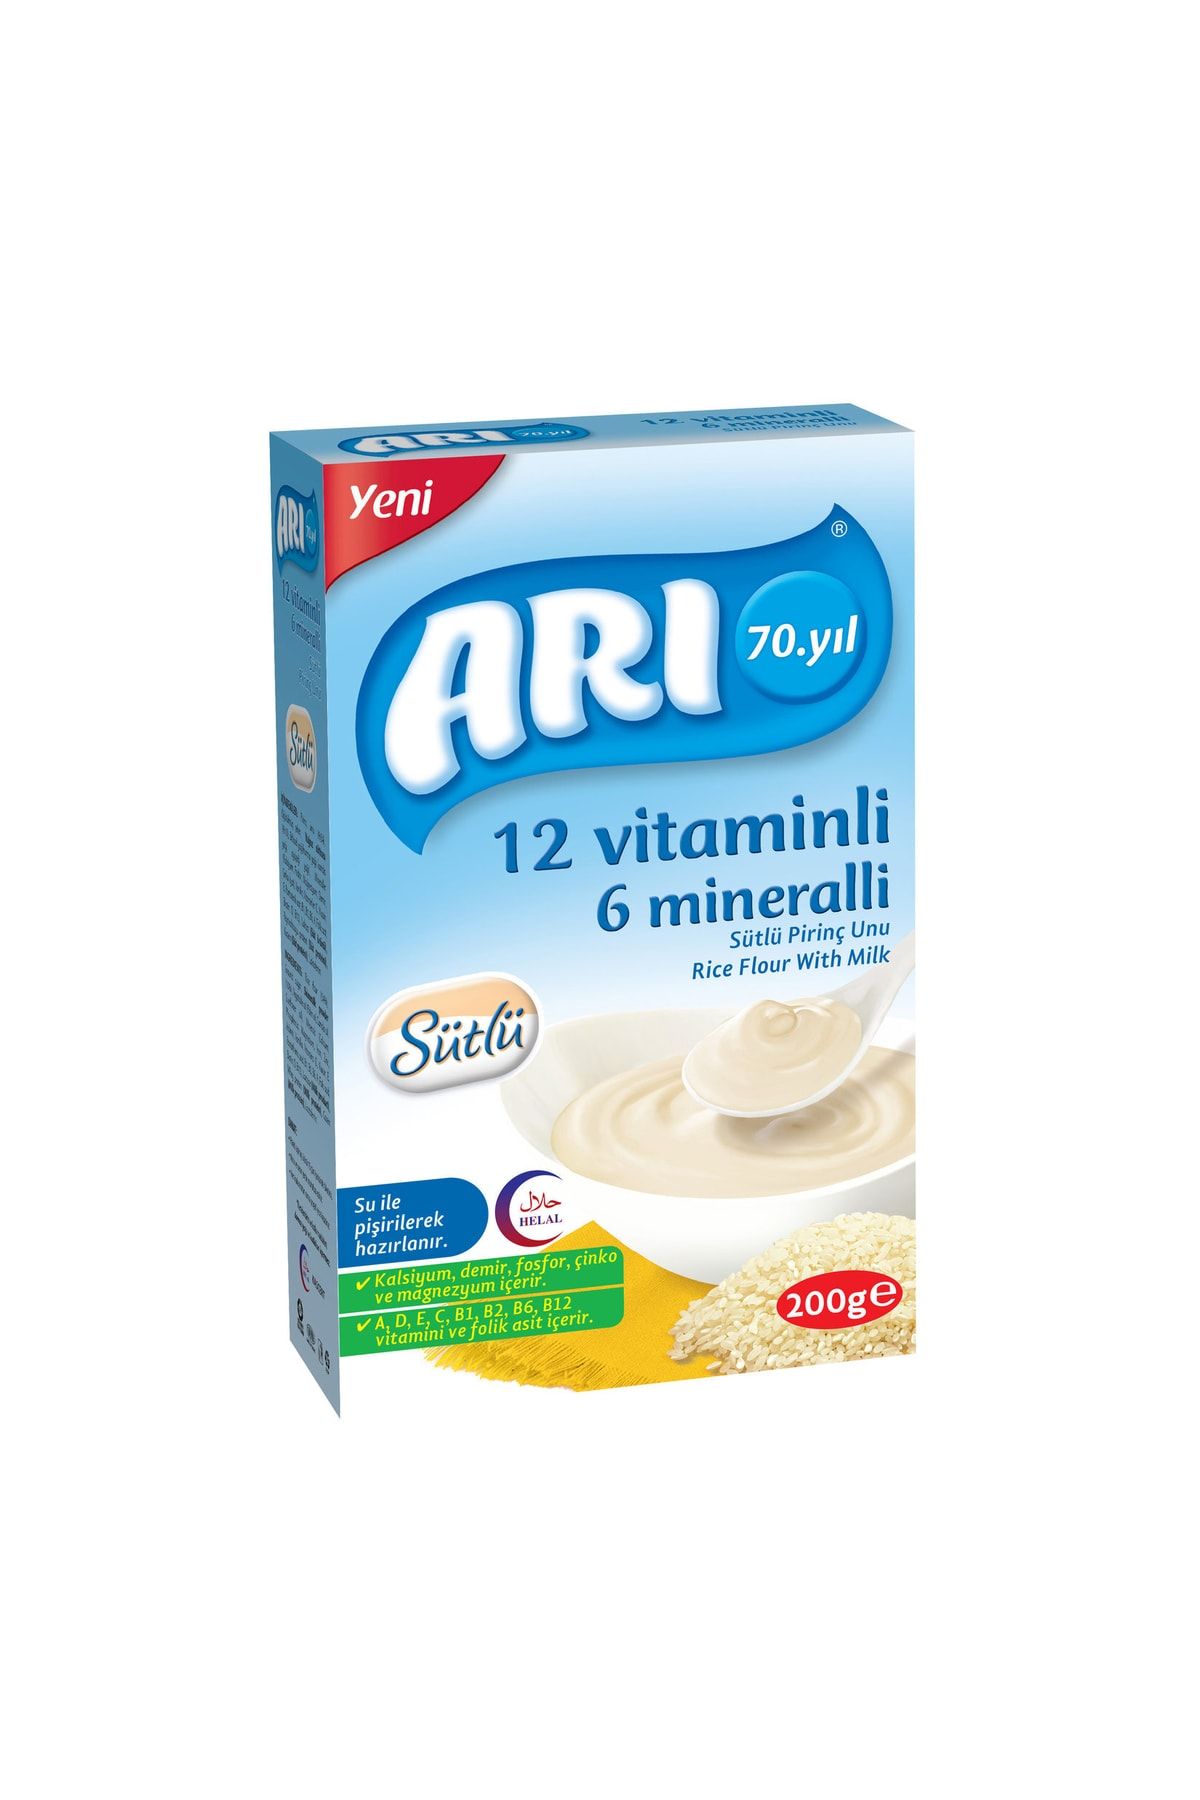 ARI 12 Vitaminli 6 Mineralli Sütlü Pirinç Unu 200g